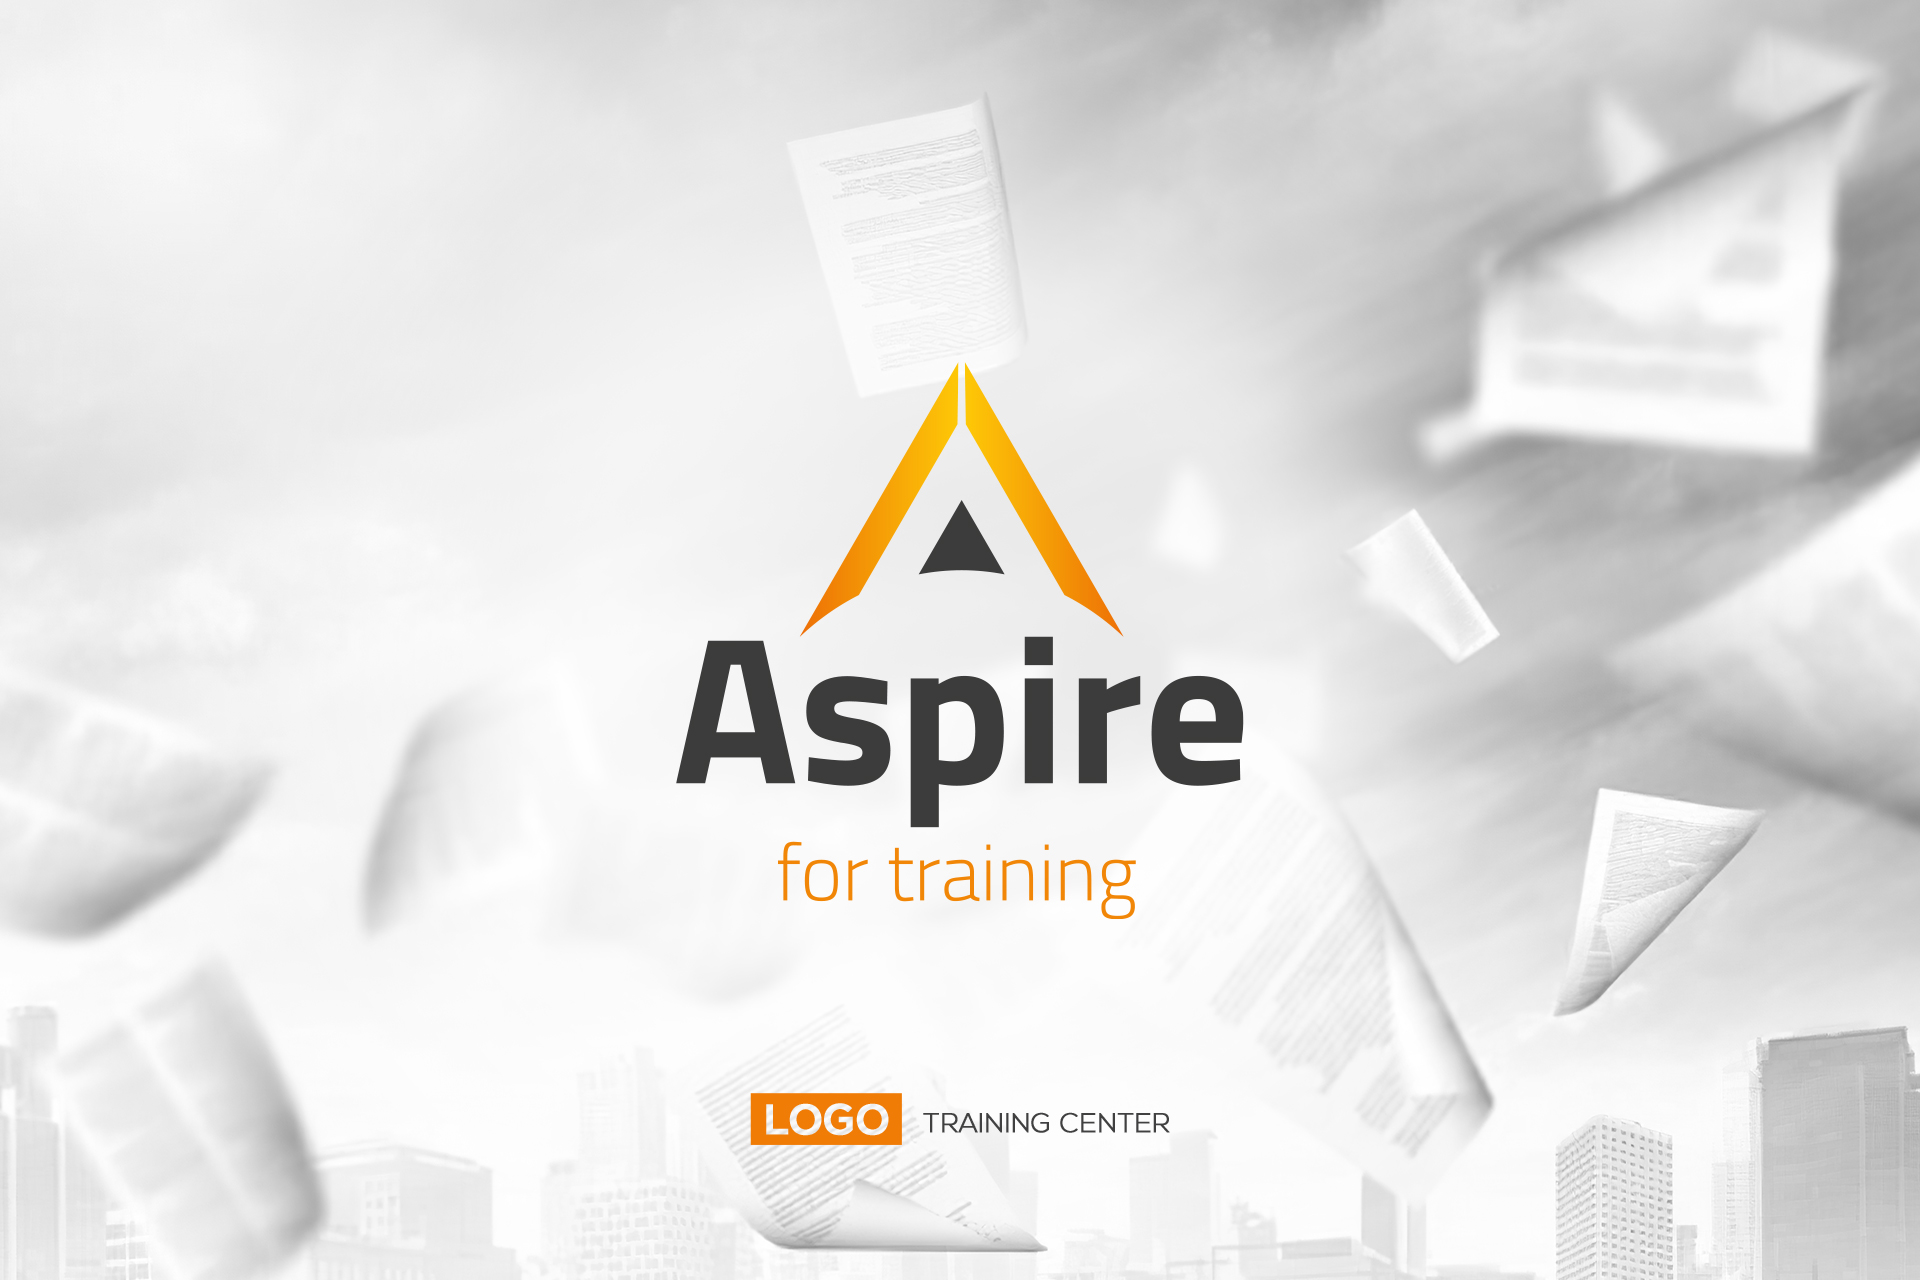 Aspire training center Logo